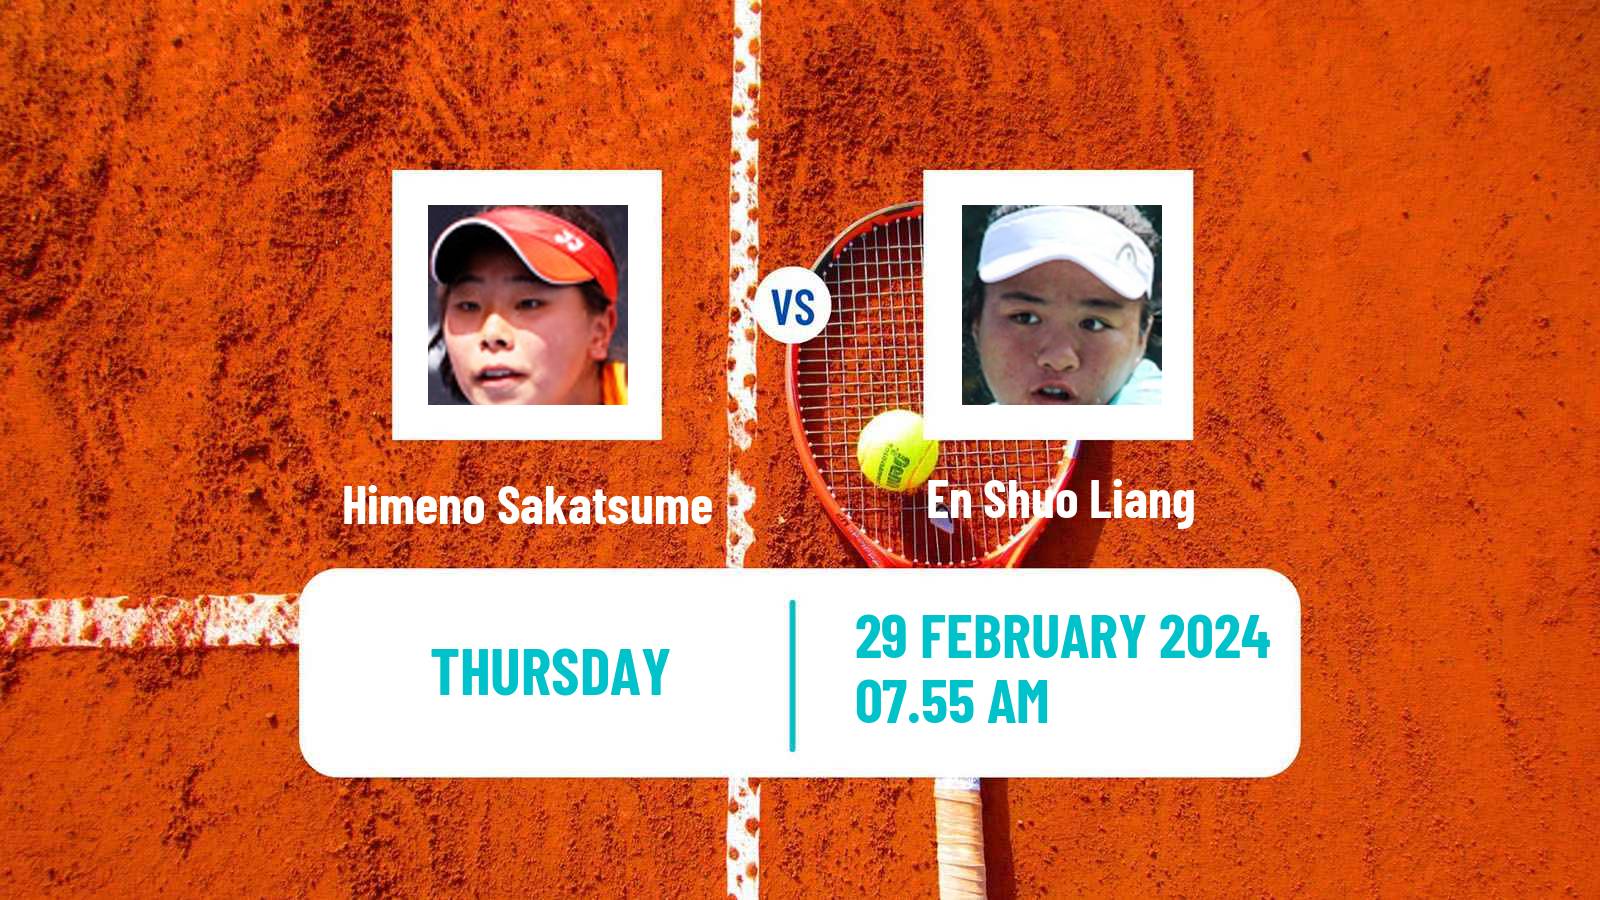 Tennis ITF W50 Trnava Women Himeno Sakatsume - En Shuo Liang